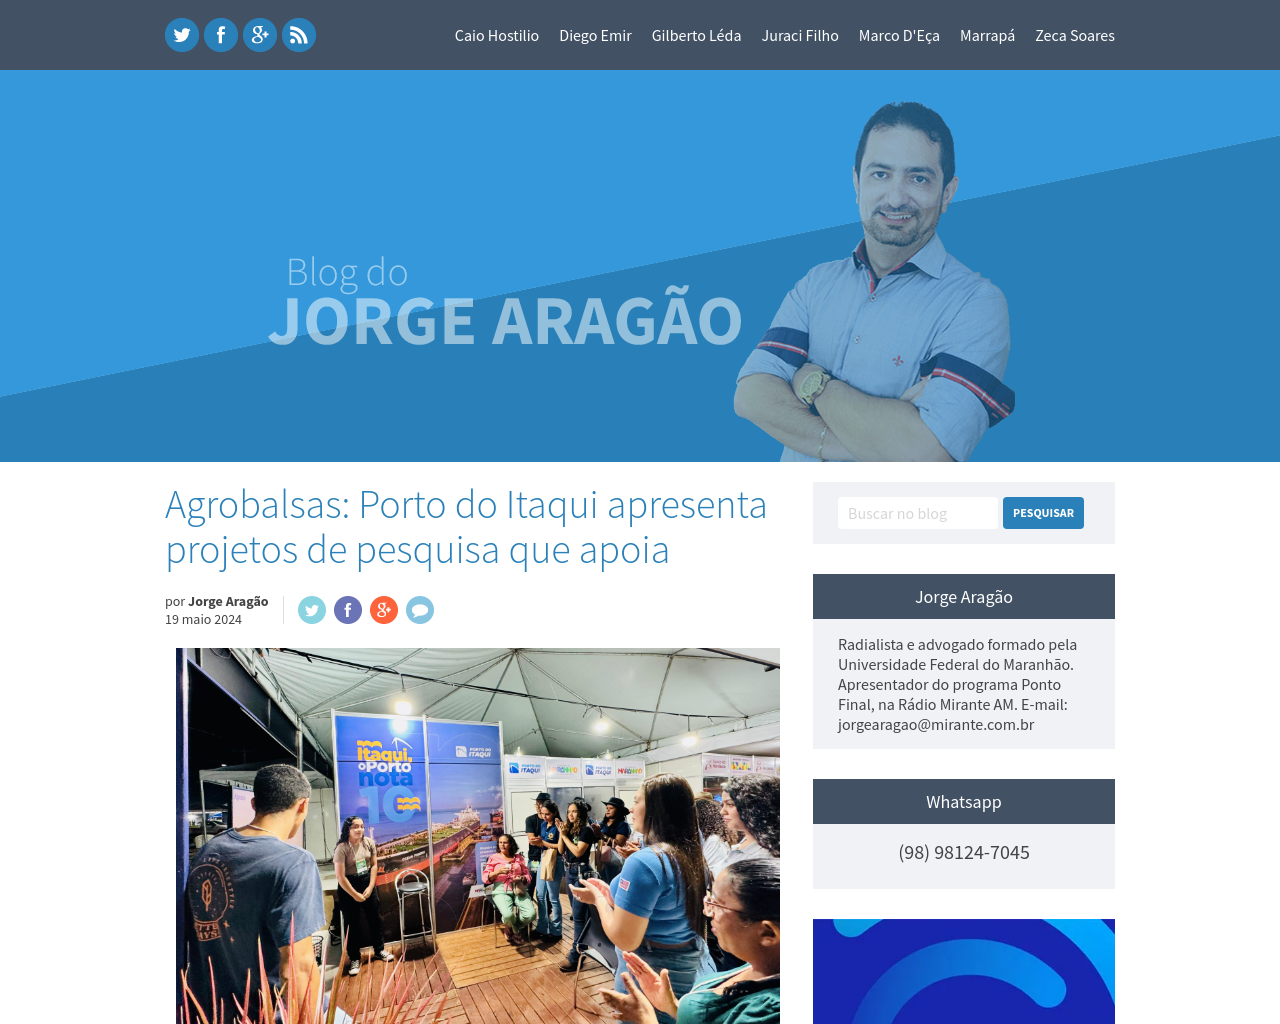 blogdojorgearagao.com.br